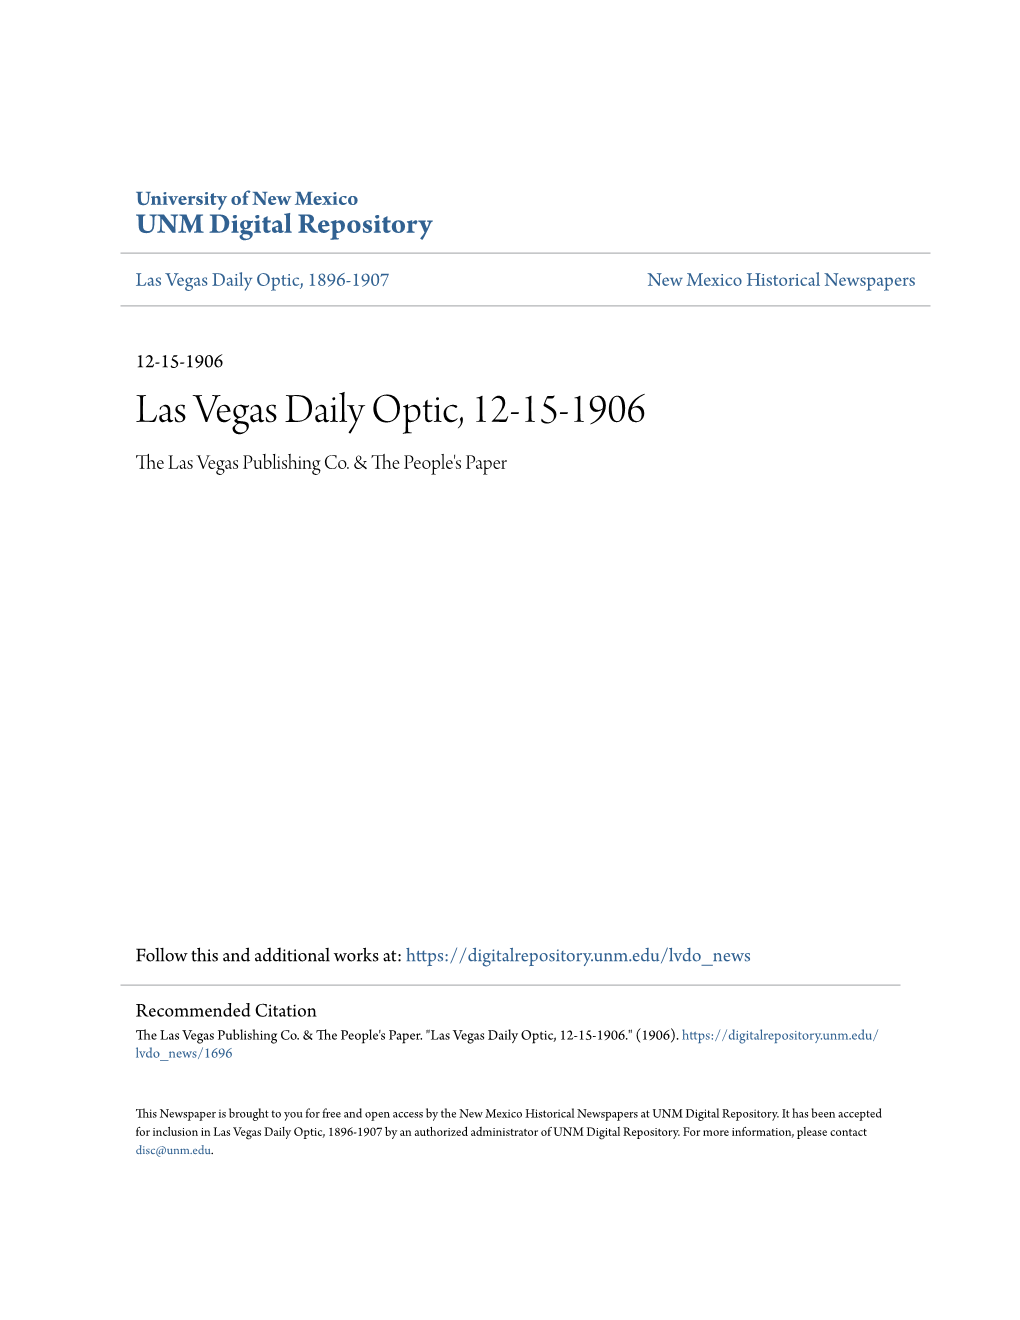 Las Vegas Daily Optic, 12-15-1906 the Las Vegas Publishing Co